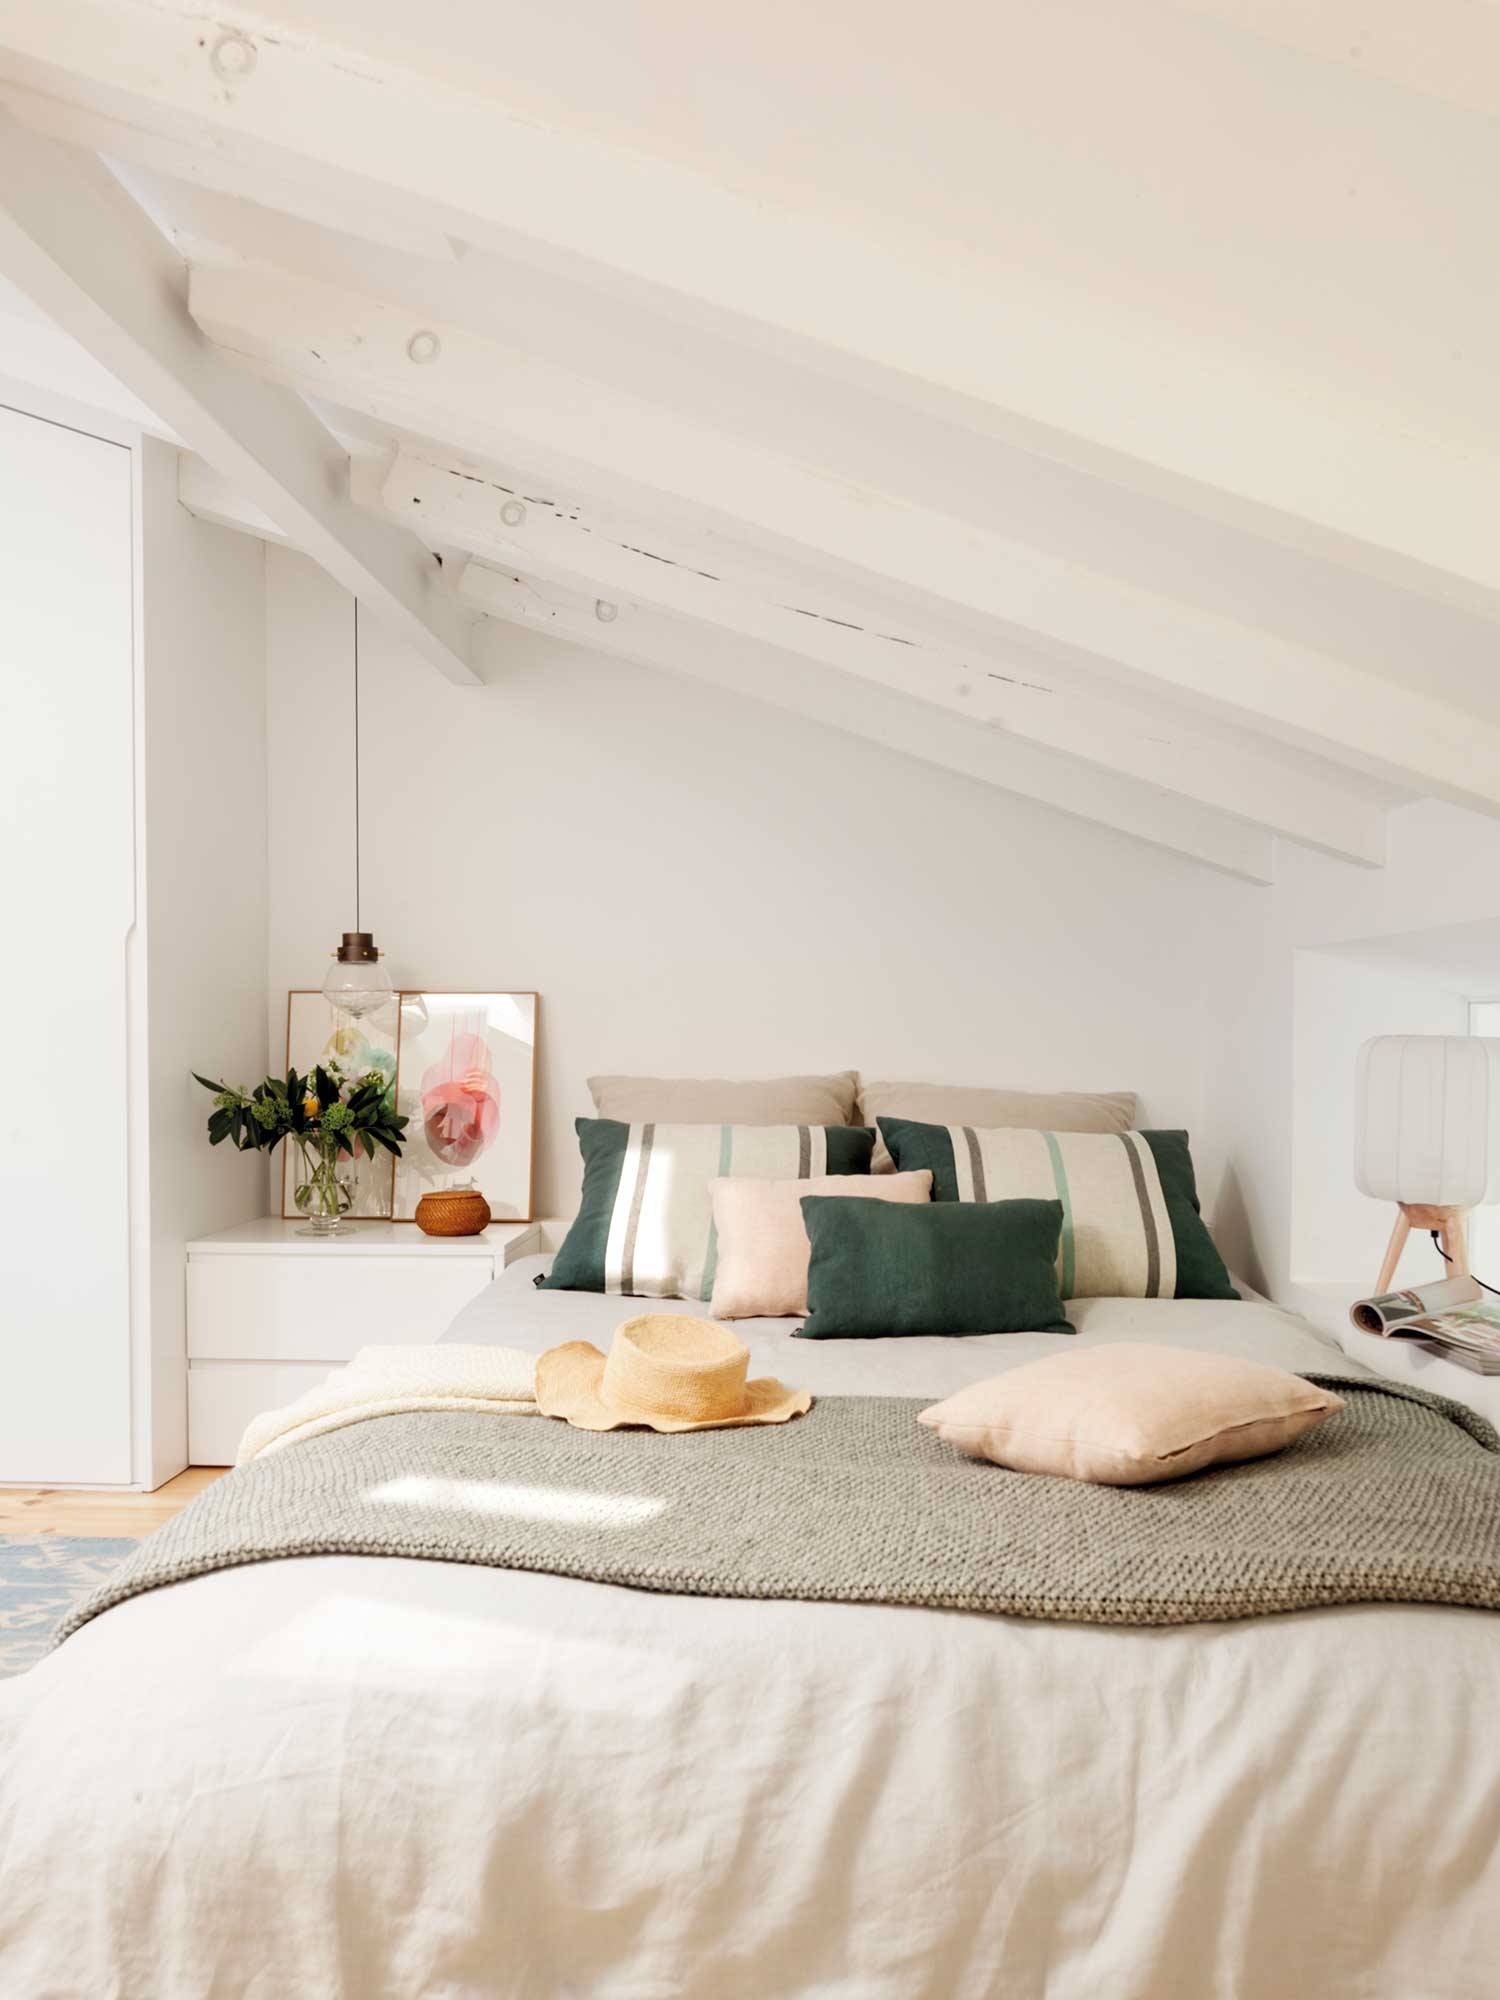 Dormitorio de estilo minimalista con muebles blancos. 